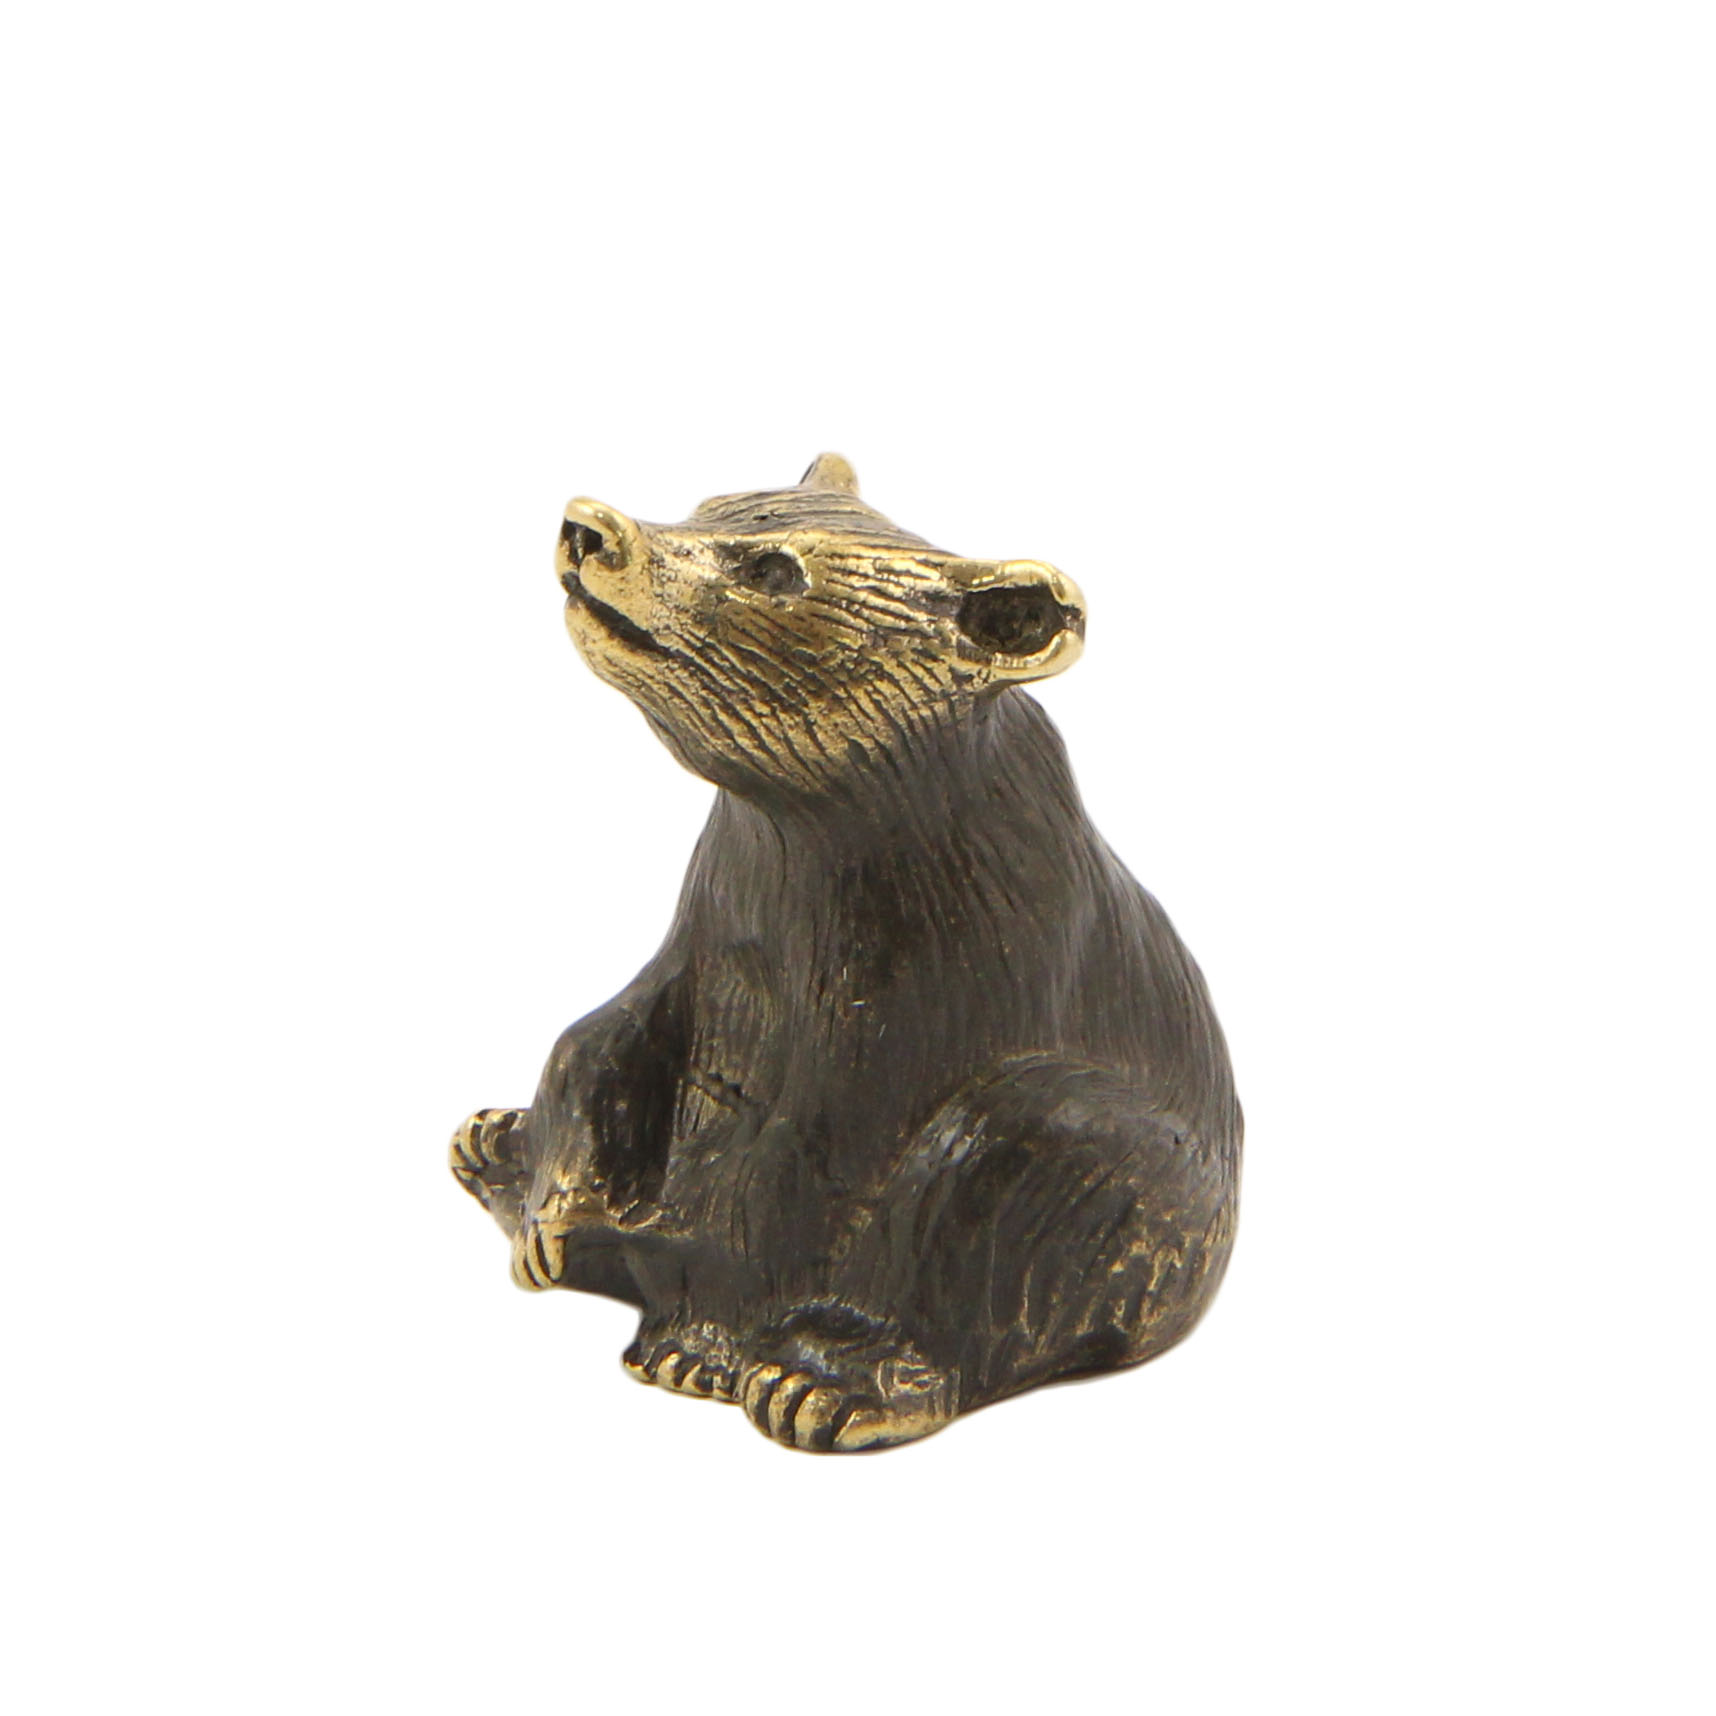 Бронзовый сувенир медведь сидячийФото 15436-02.jpg